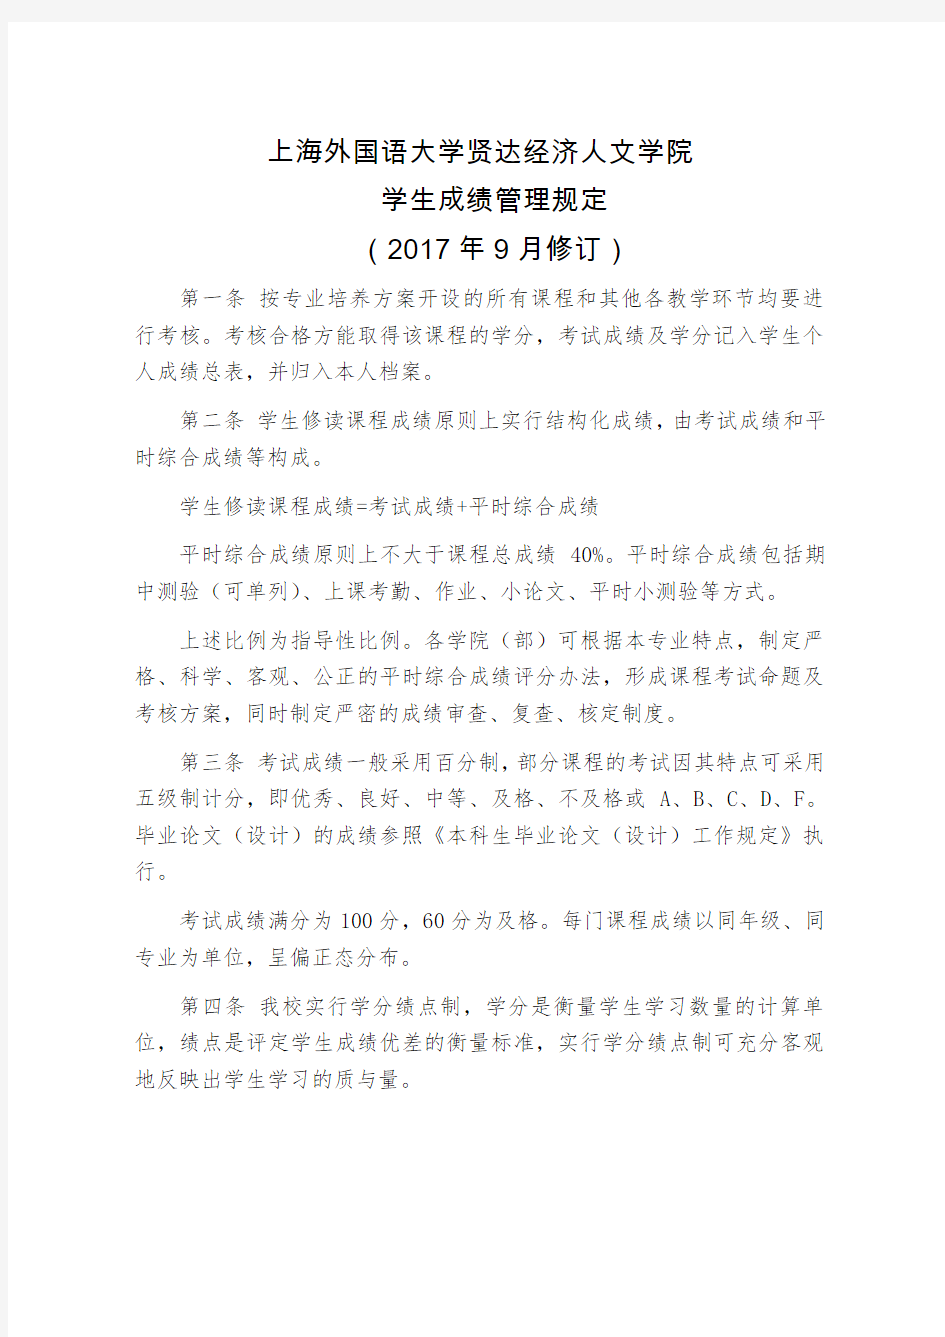 上海外国语大学贤达经济人文学院学生成绩管理规定